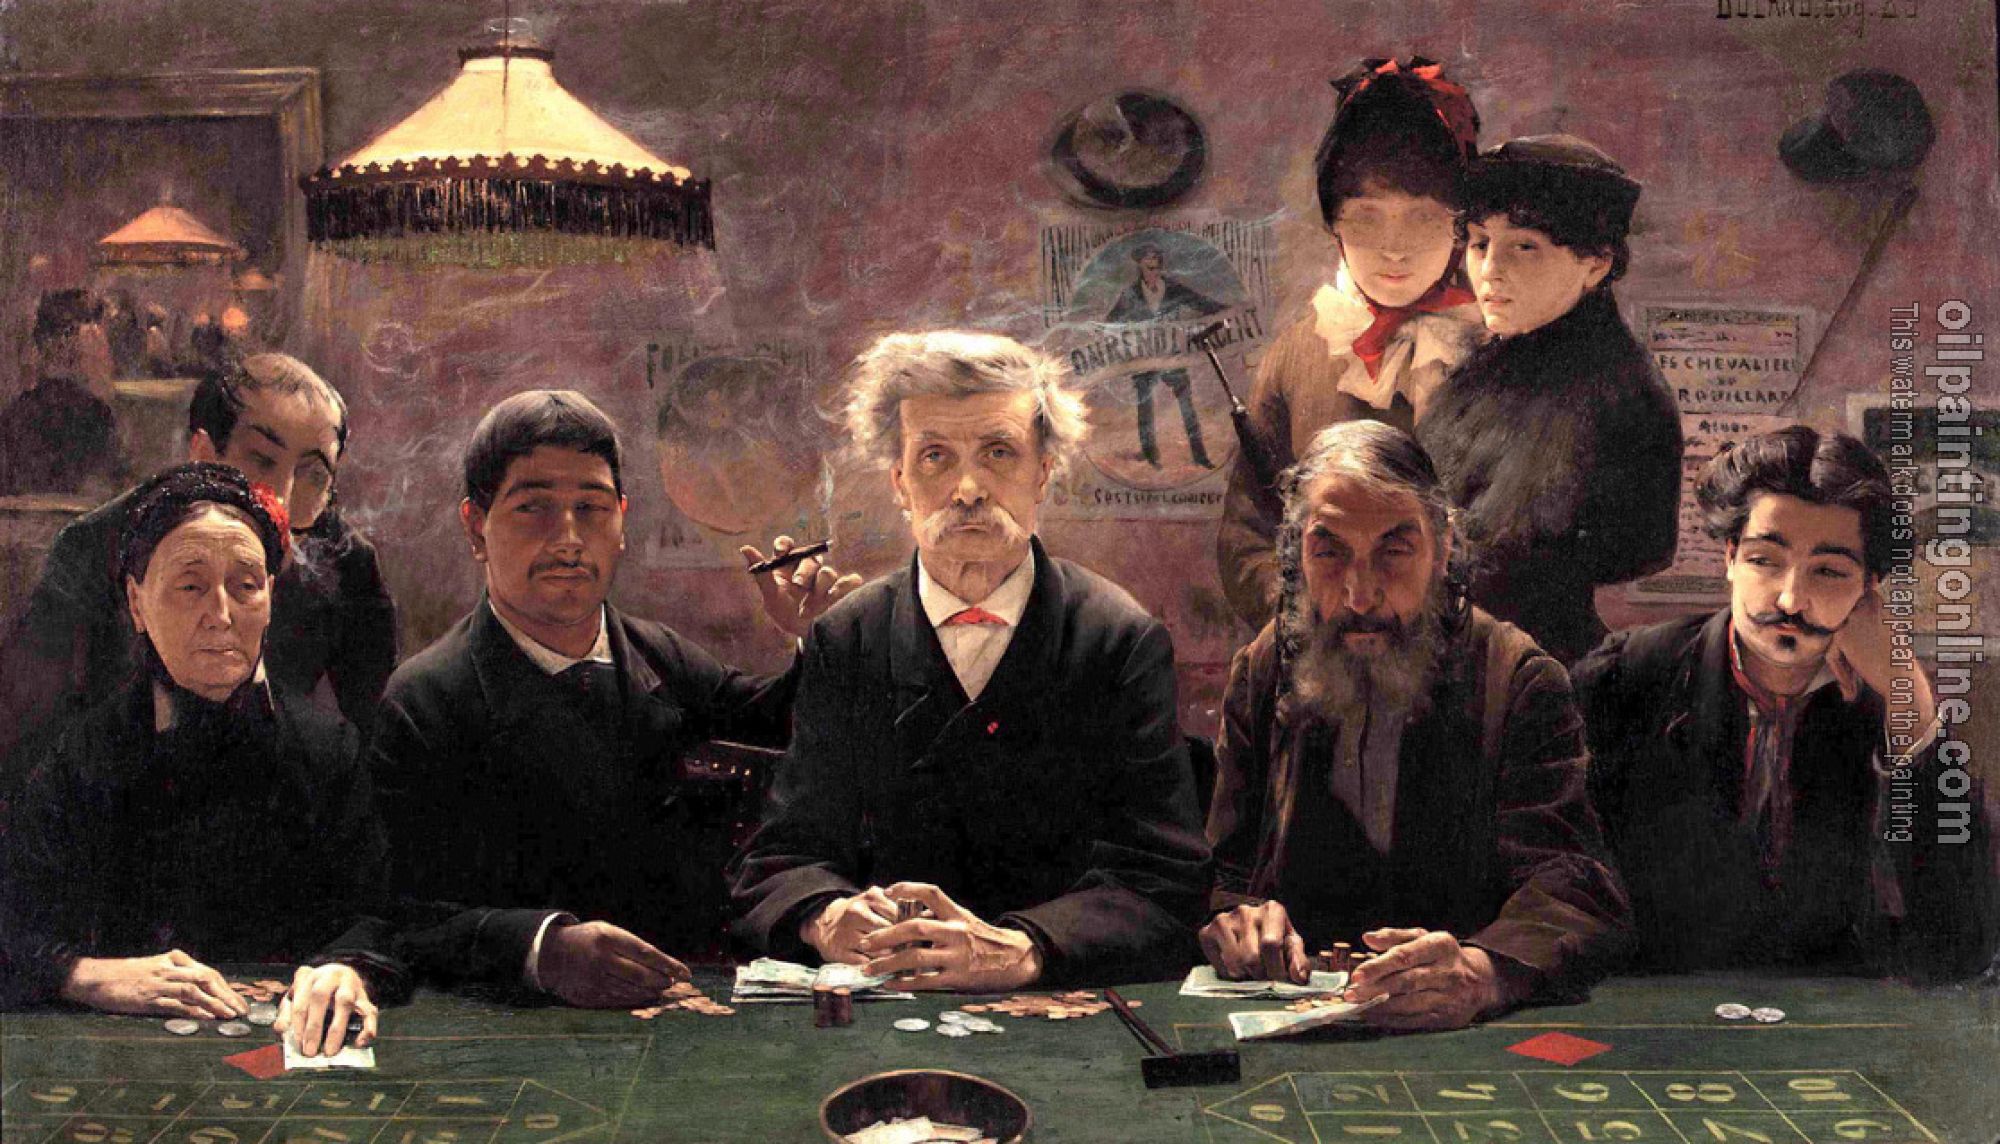 Jean Eugene Buland - The Gambling Den